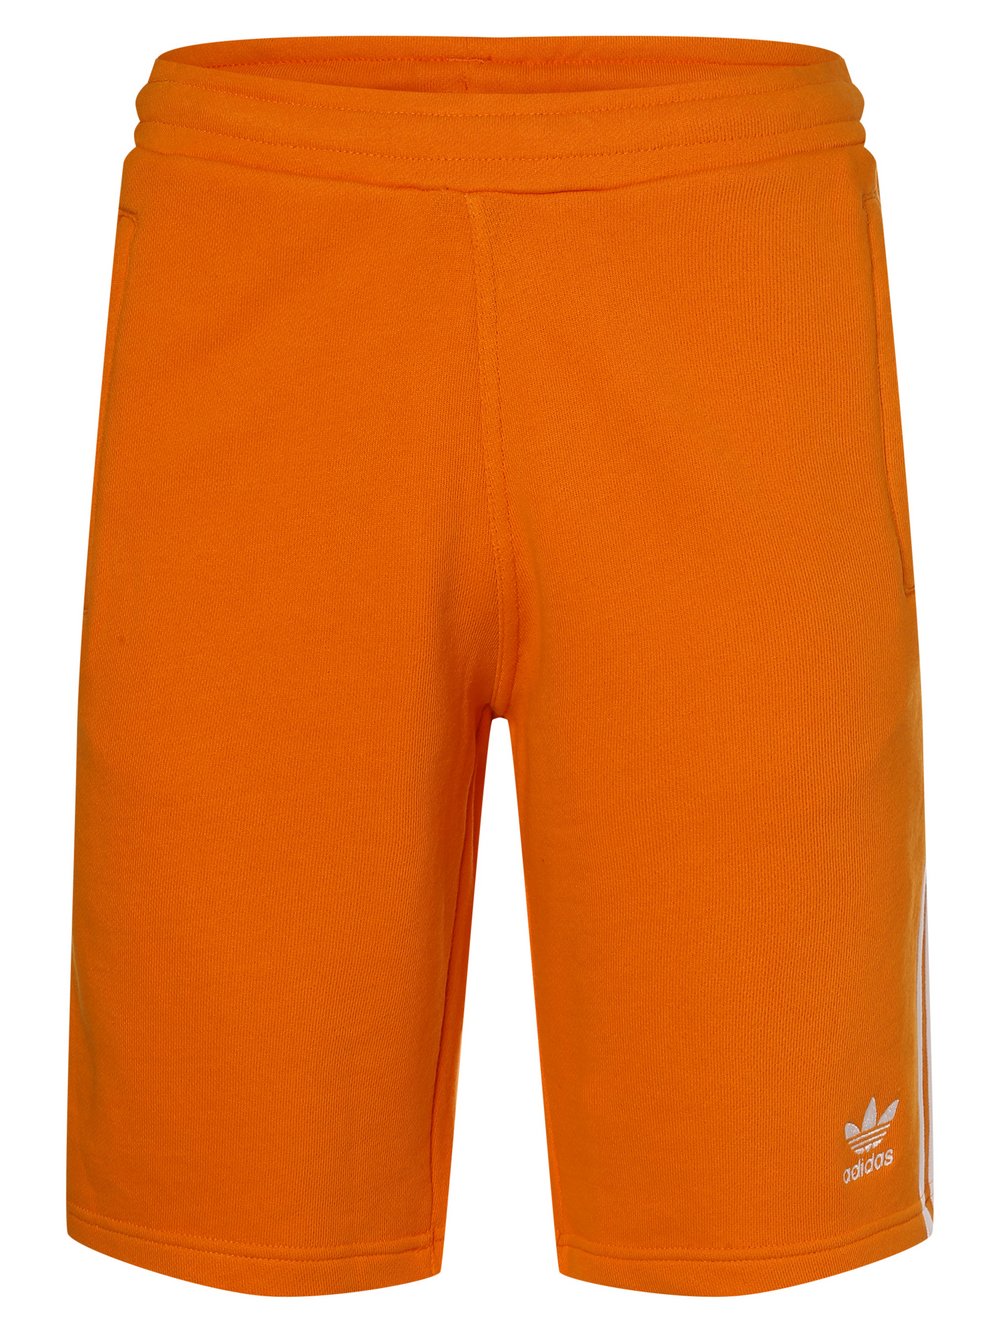 Adidas Originals - Spodenki dresowe męskie, pomarańczowy